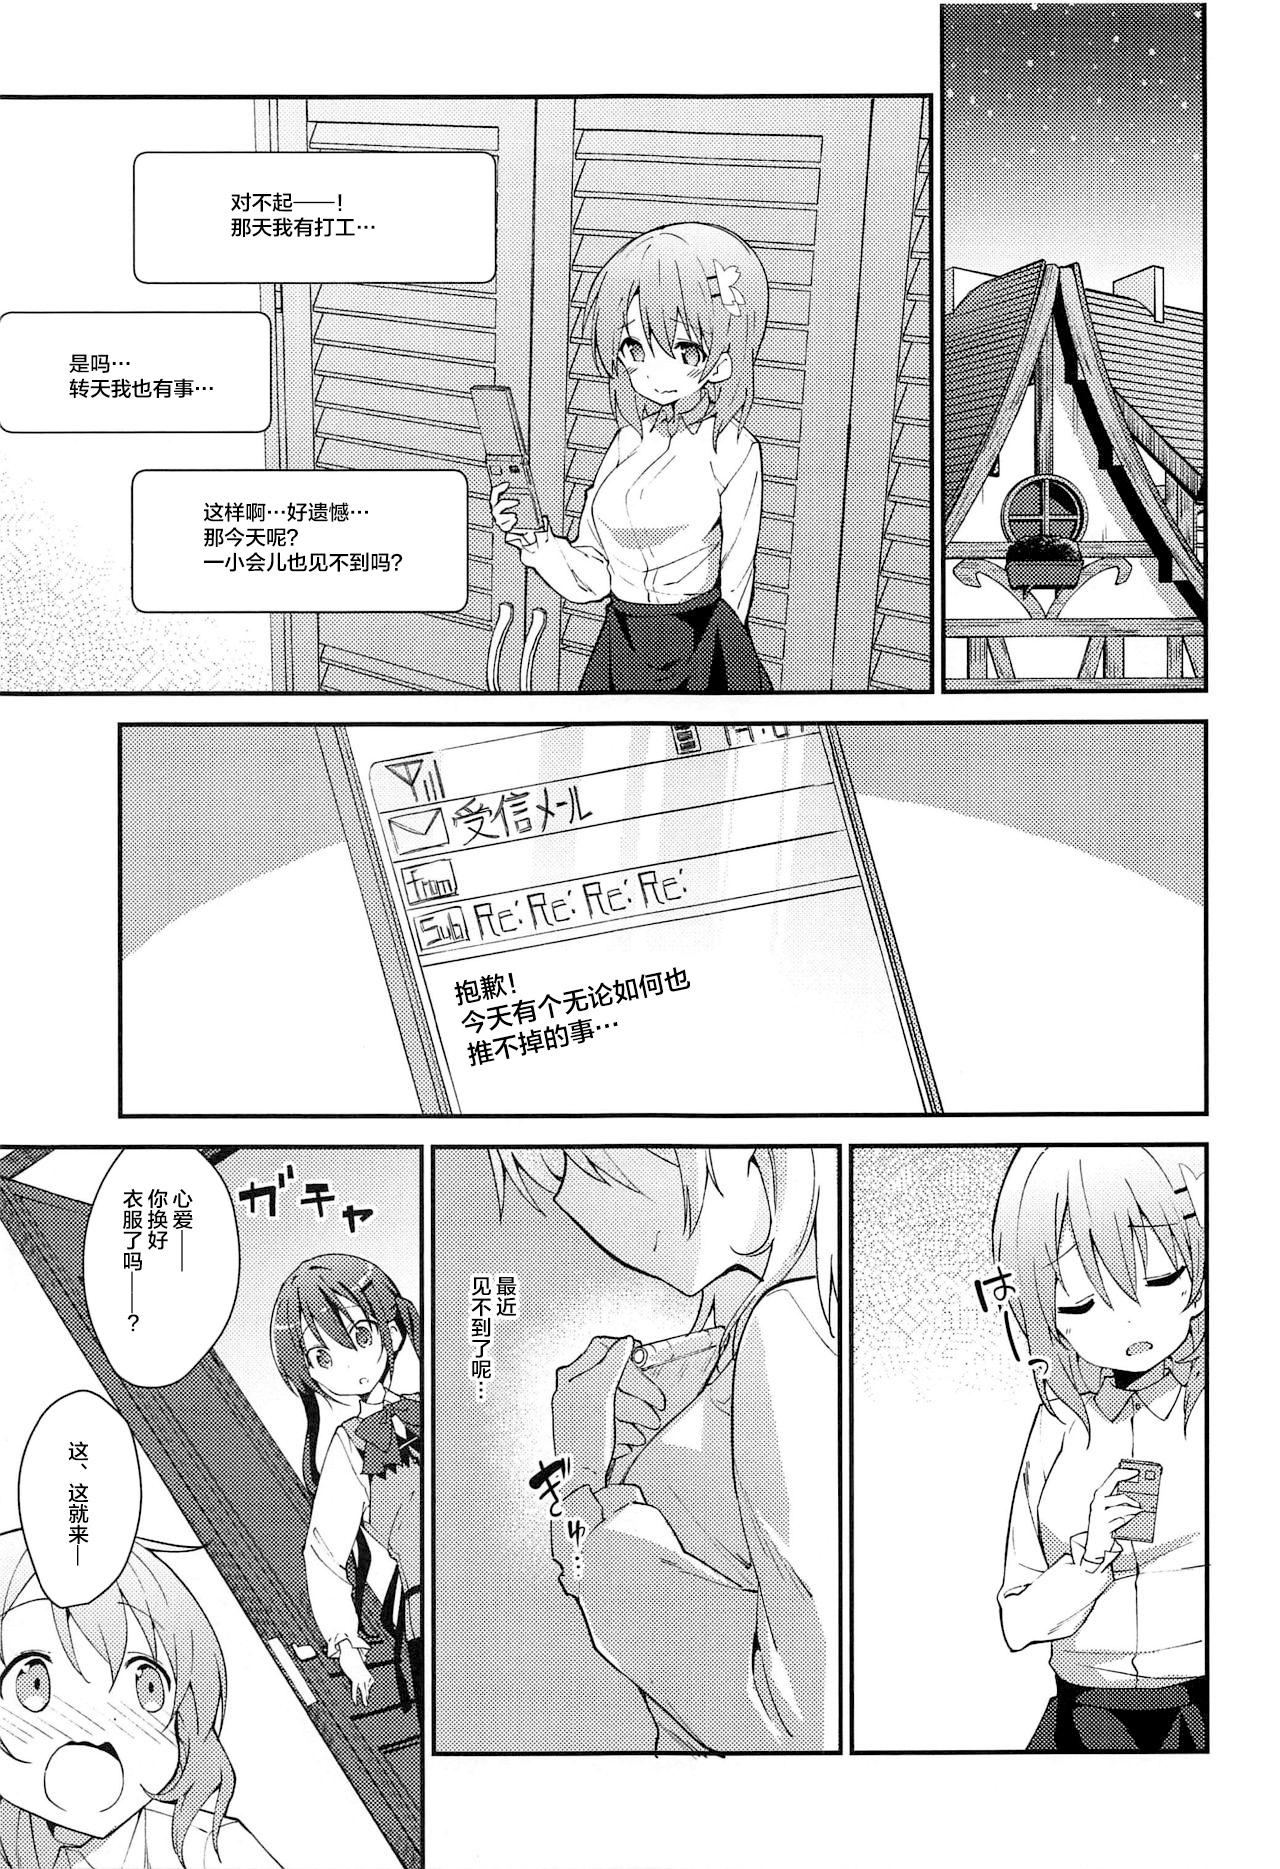 Amatuer Sex Attakai Kokoa wa Ikaga desu ka? - How about warm cocoa? - Gochuumon wa usagi desu ka Striptease - Page 5